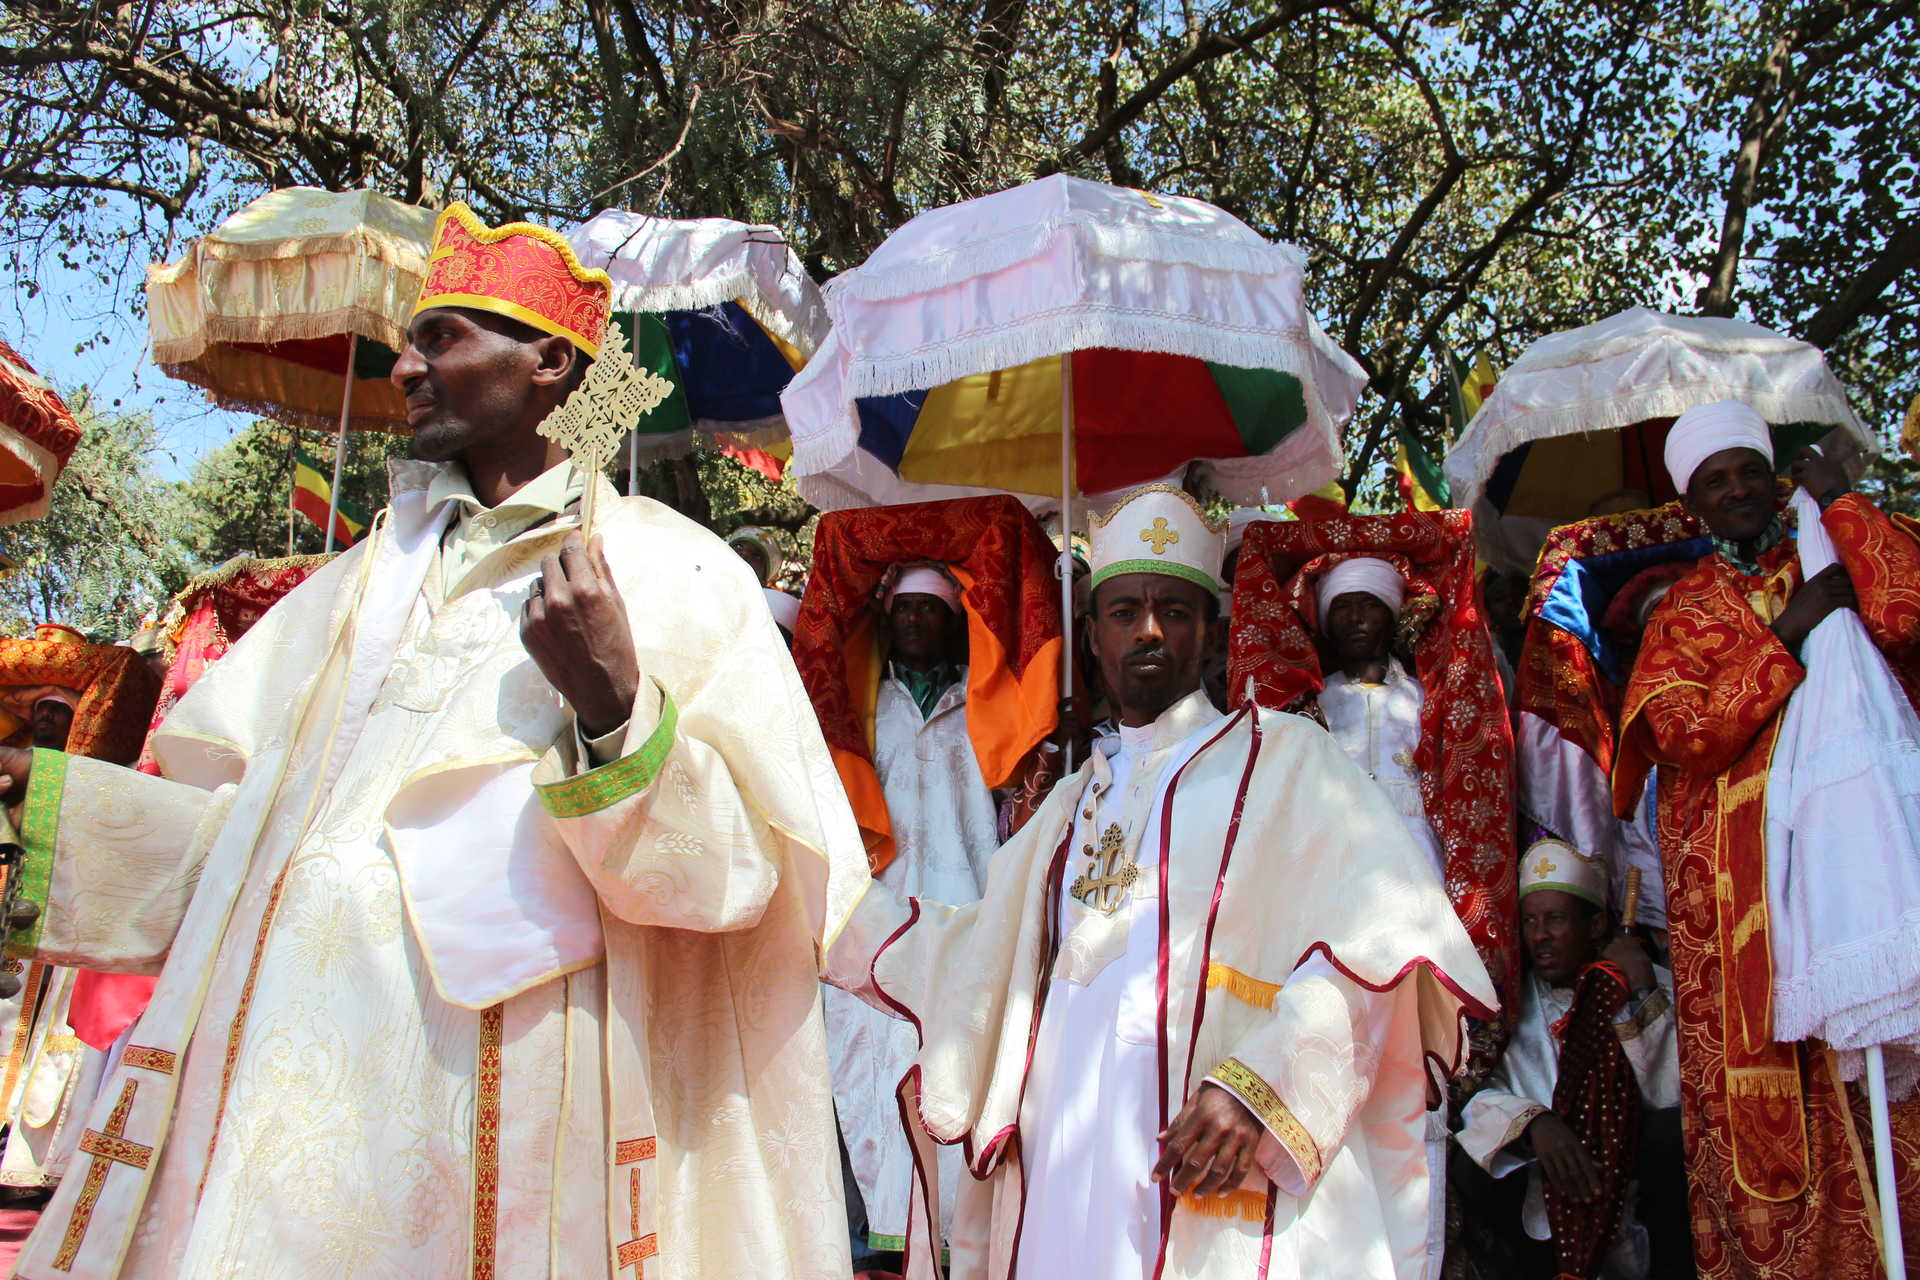 Procession pendant la fête de Timkat en Ethiopie